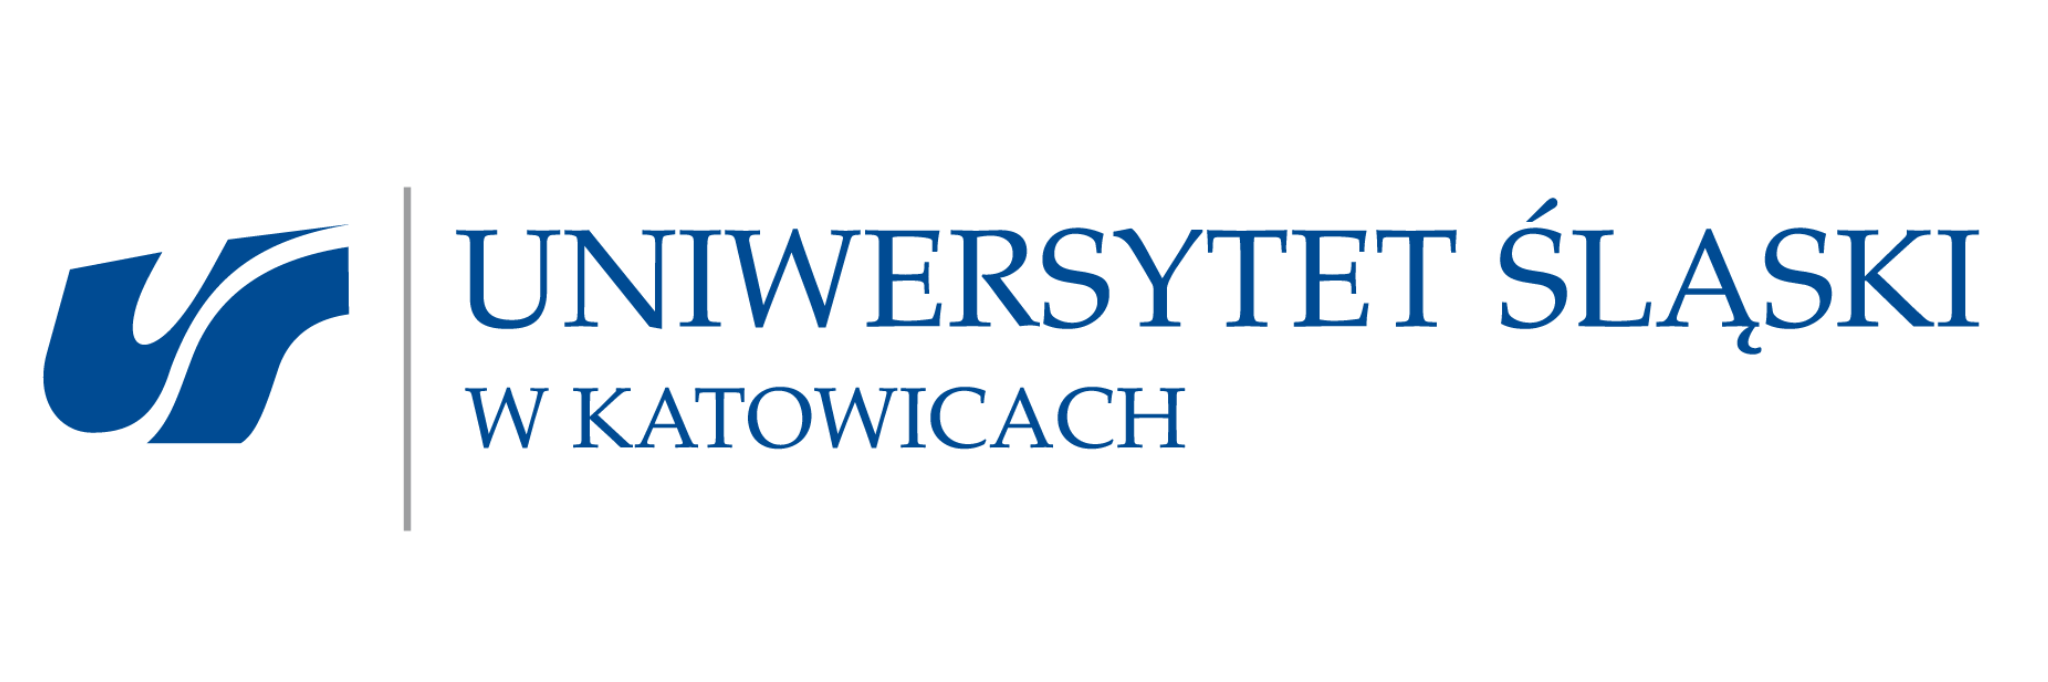 Logo Uniwersytetu Śląskiego przekierowujące do strony uniwersytetu.